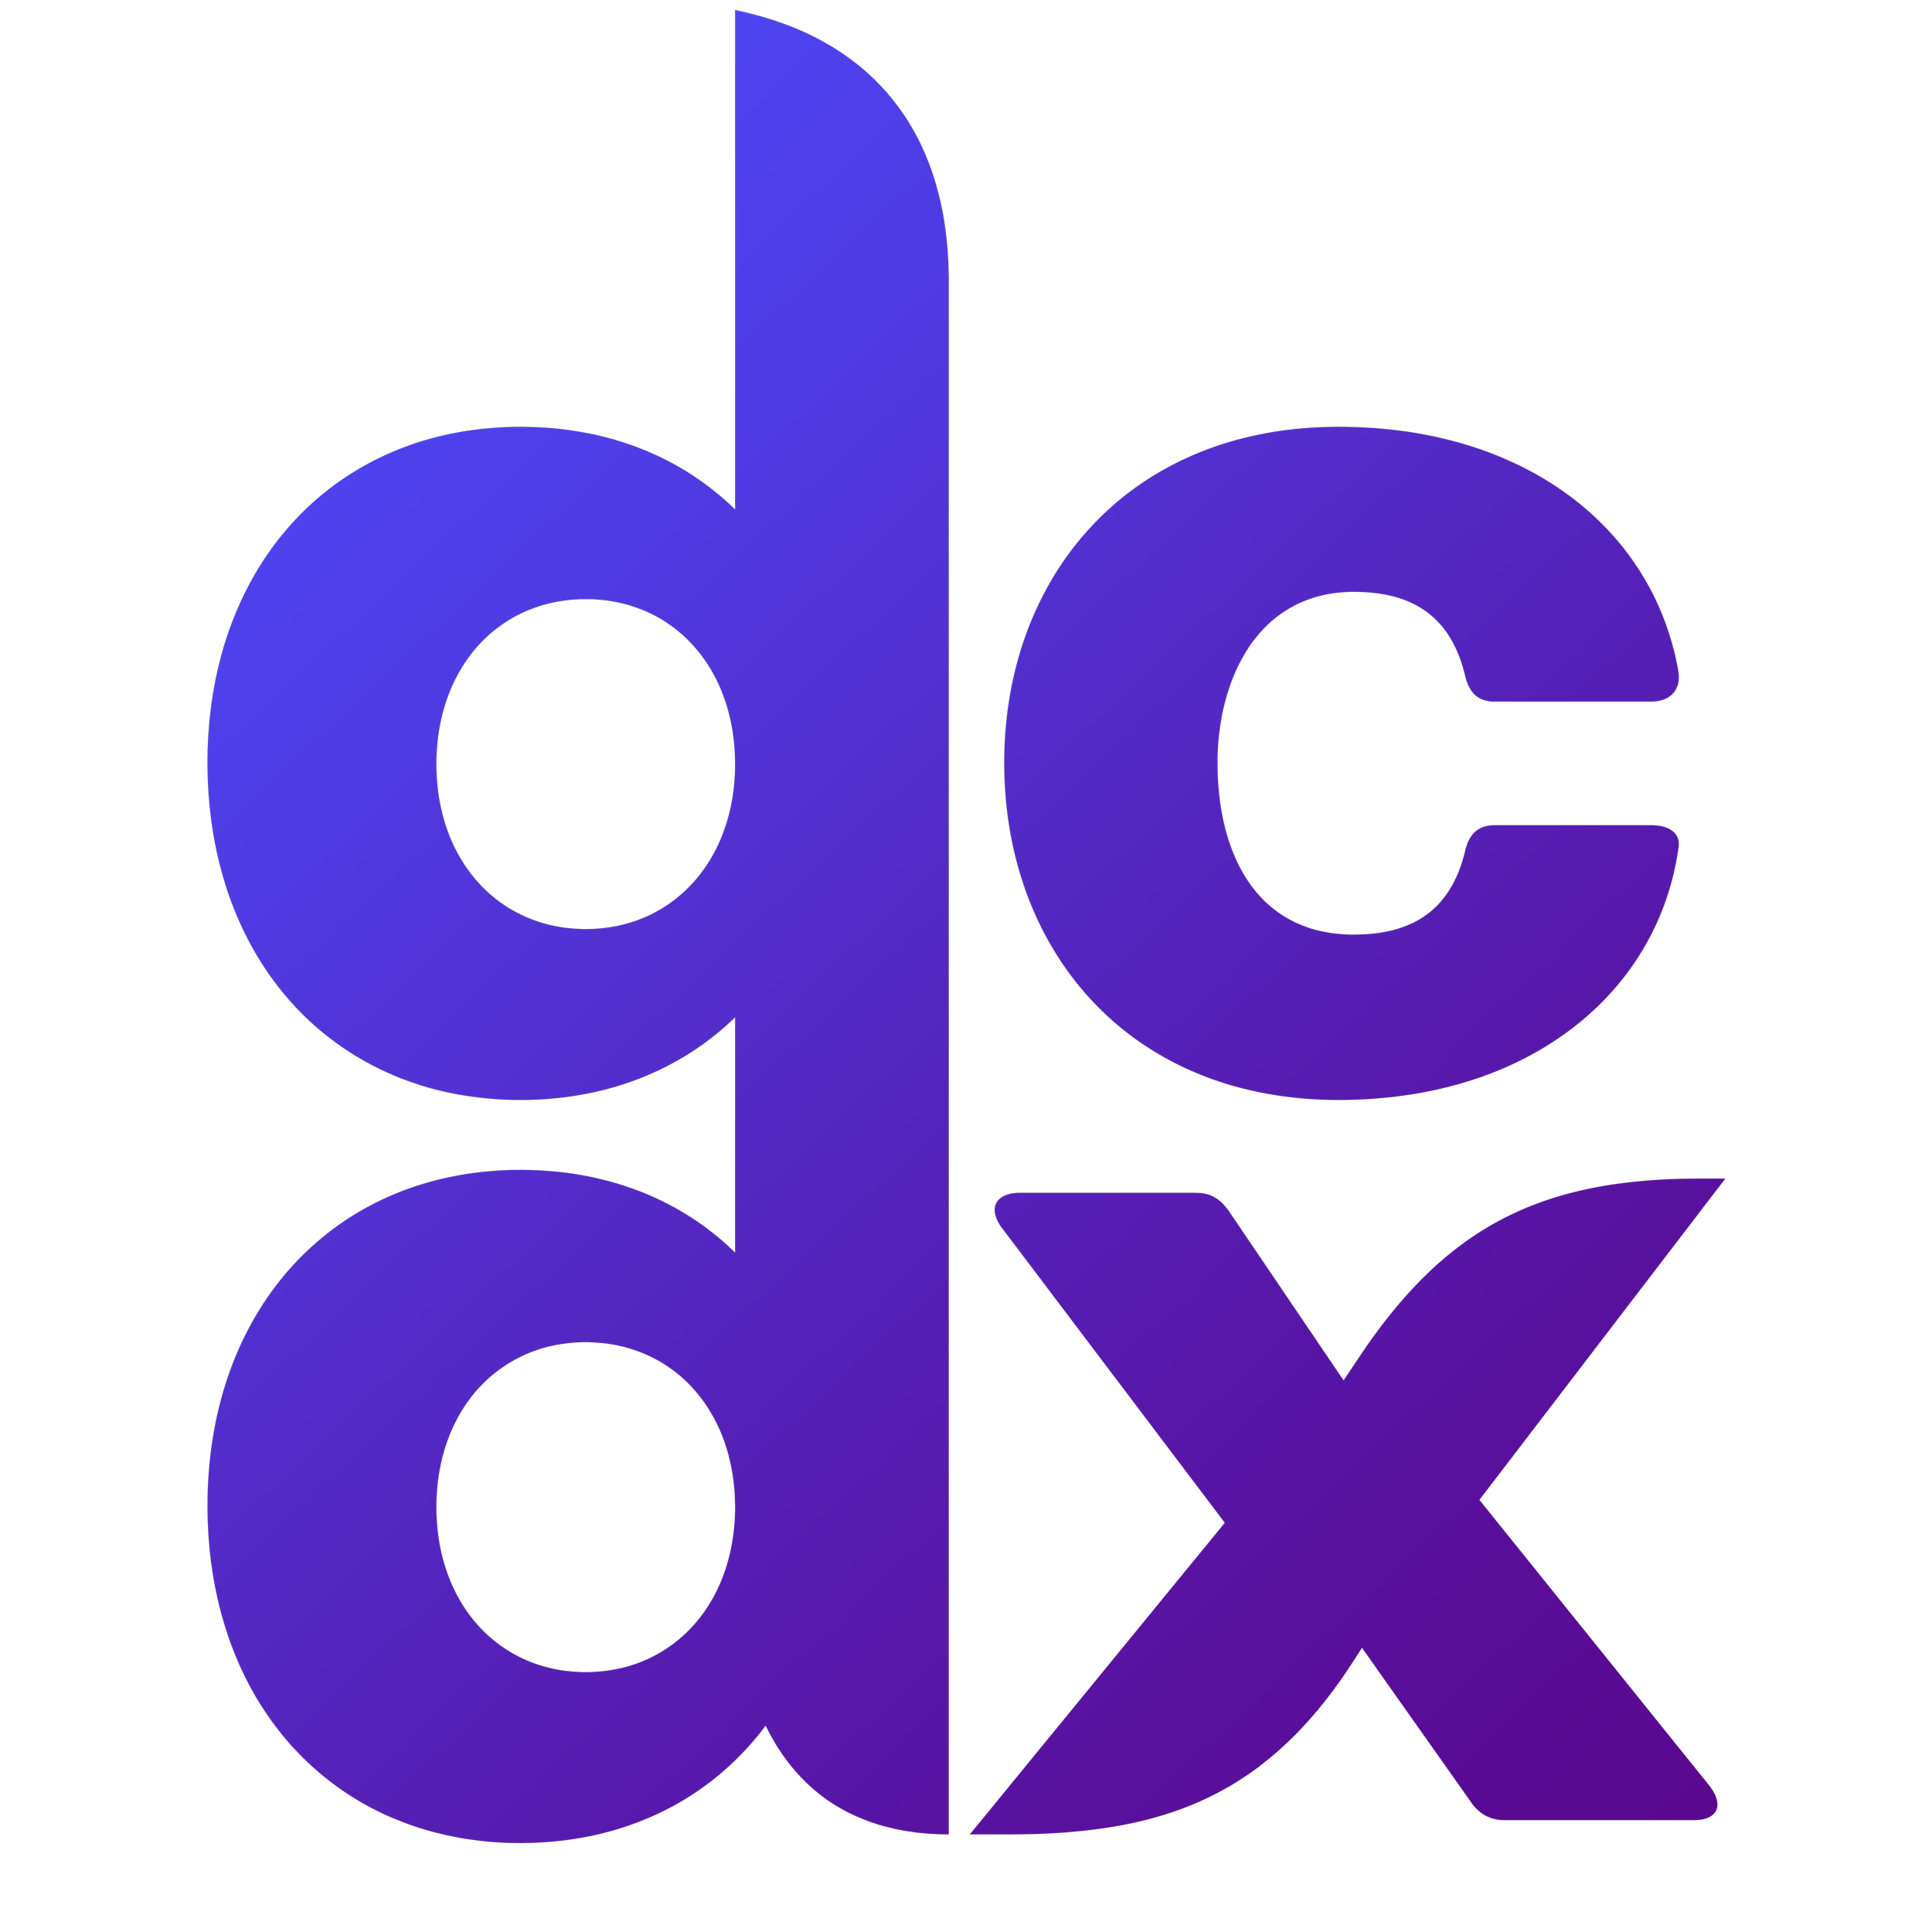 dcdx